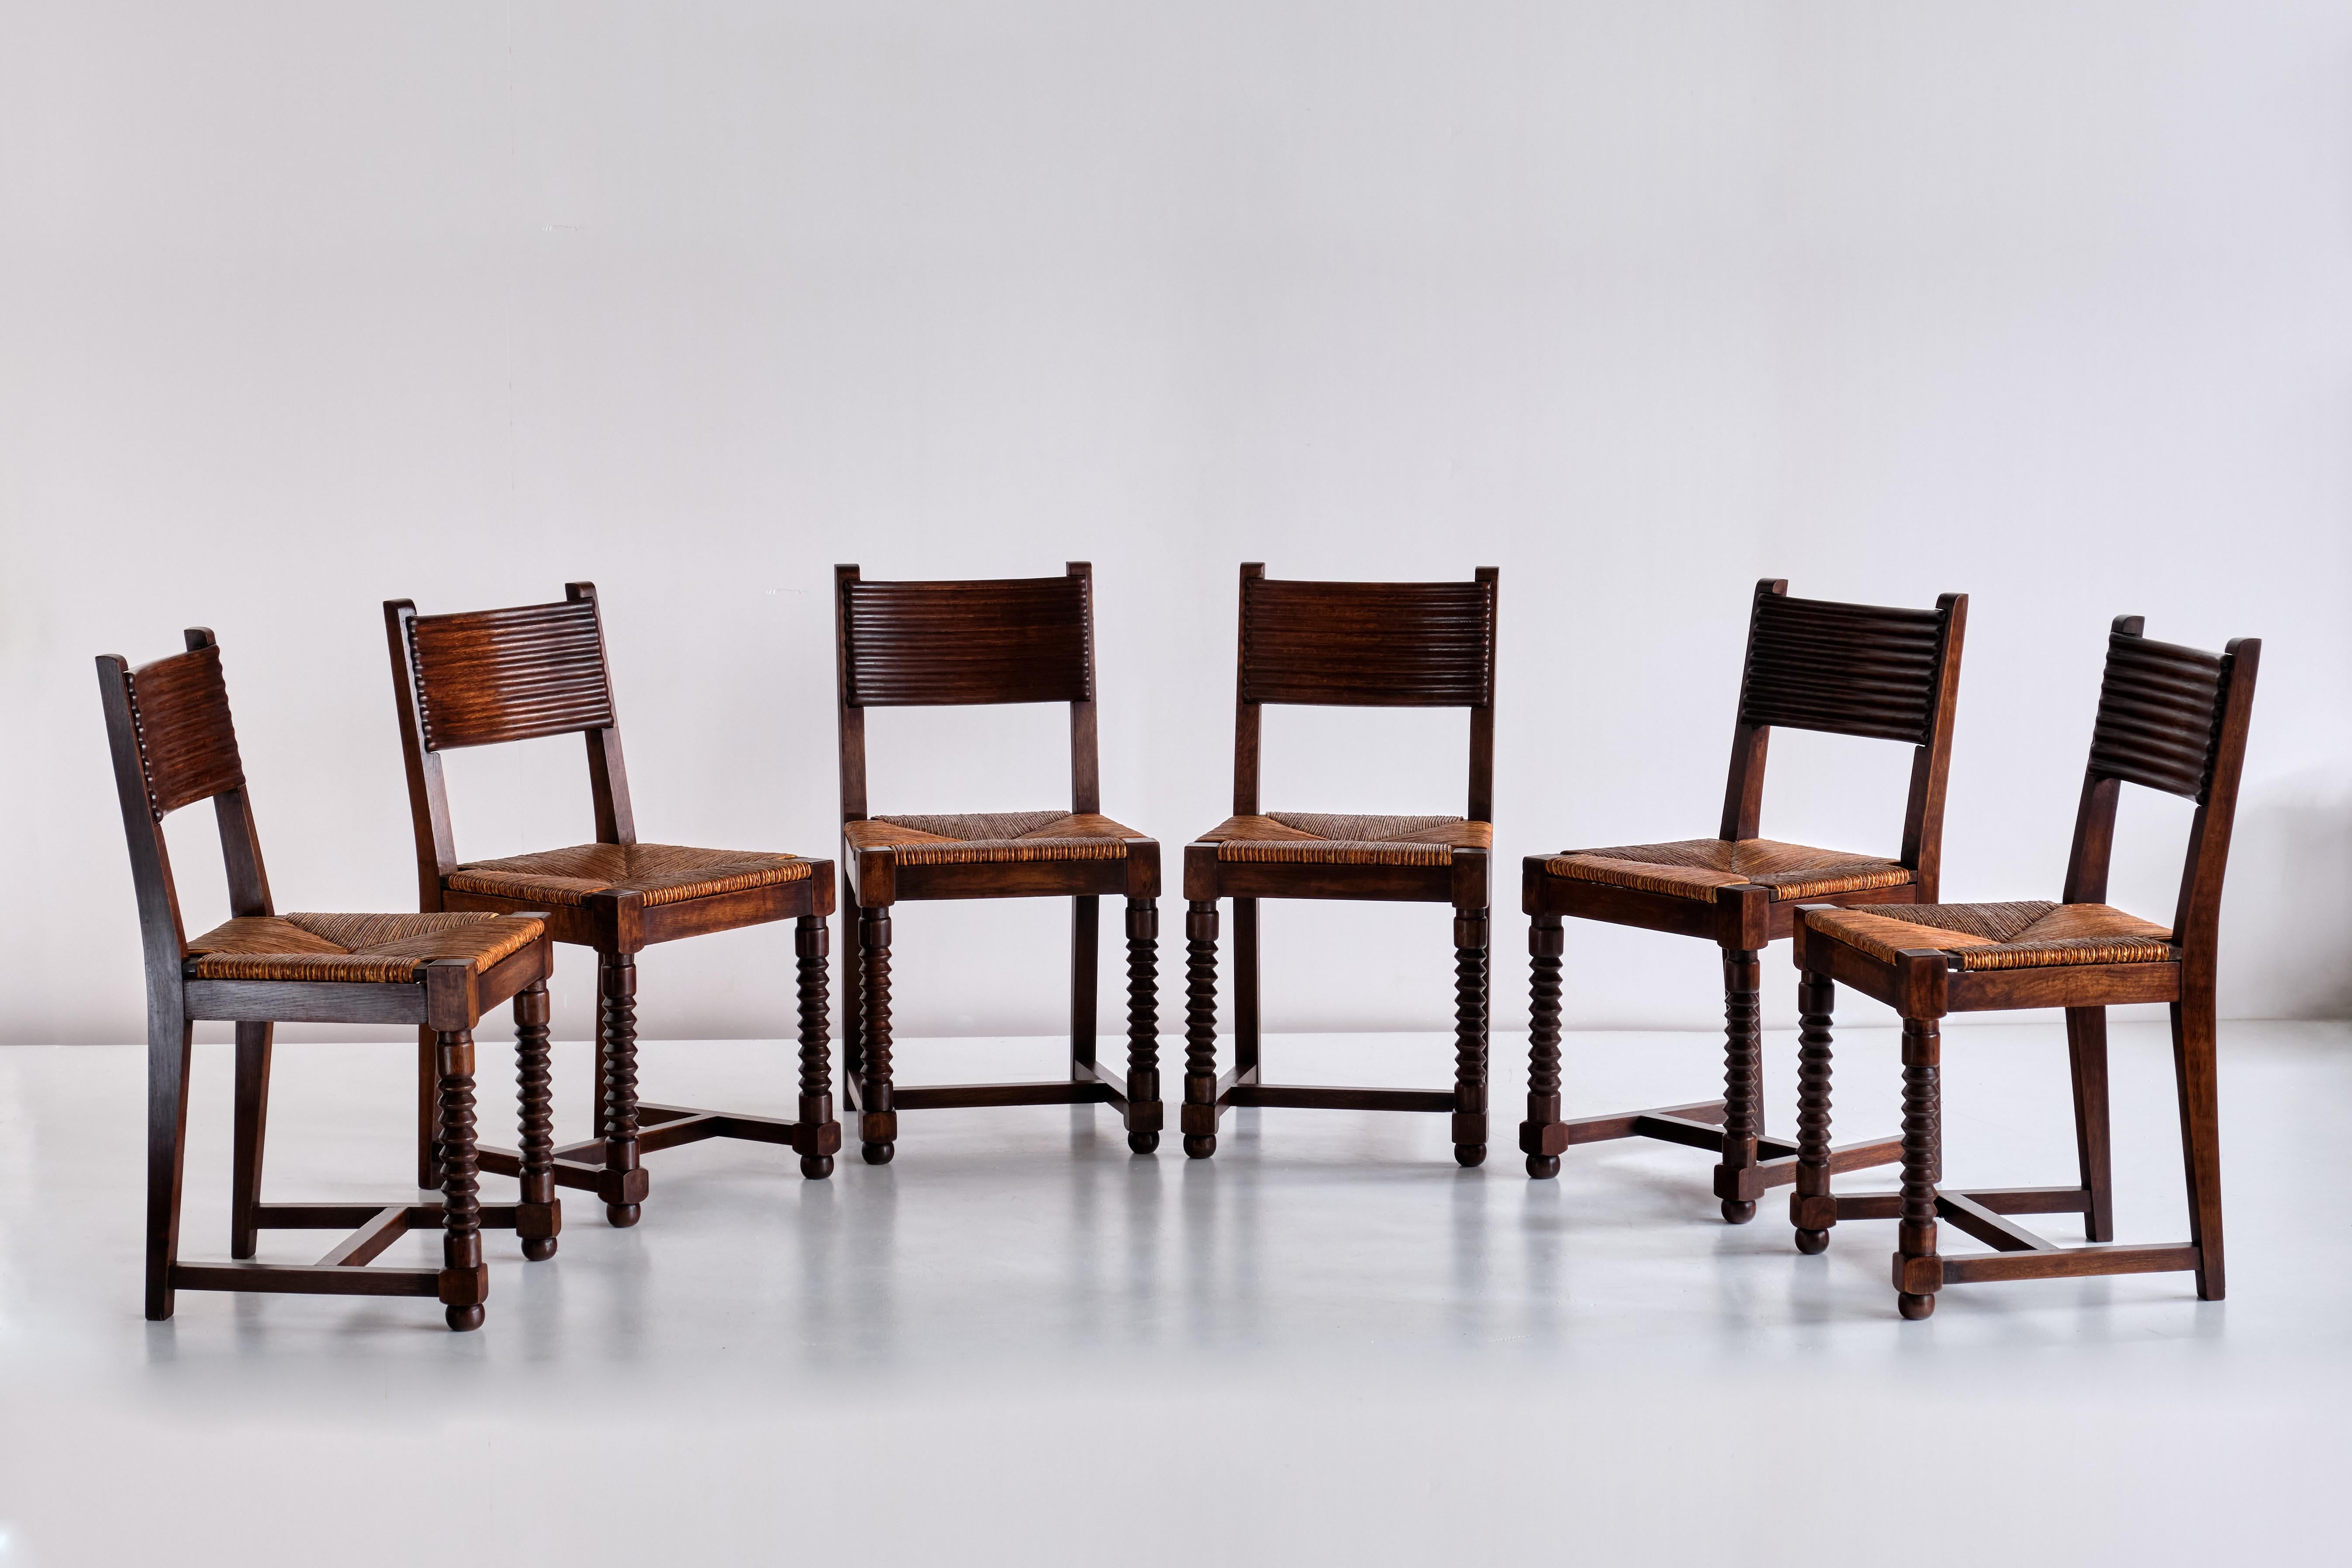 Cet ensemble saisissant de six chaises de salle à manger a été conçu par Victor Courtray et produit dans la région du Pays basque nord autour de la ville de Biarritz dans les années 1940. 
Les chaises sont en chêne massif teinté, avec un siège en